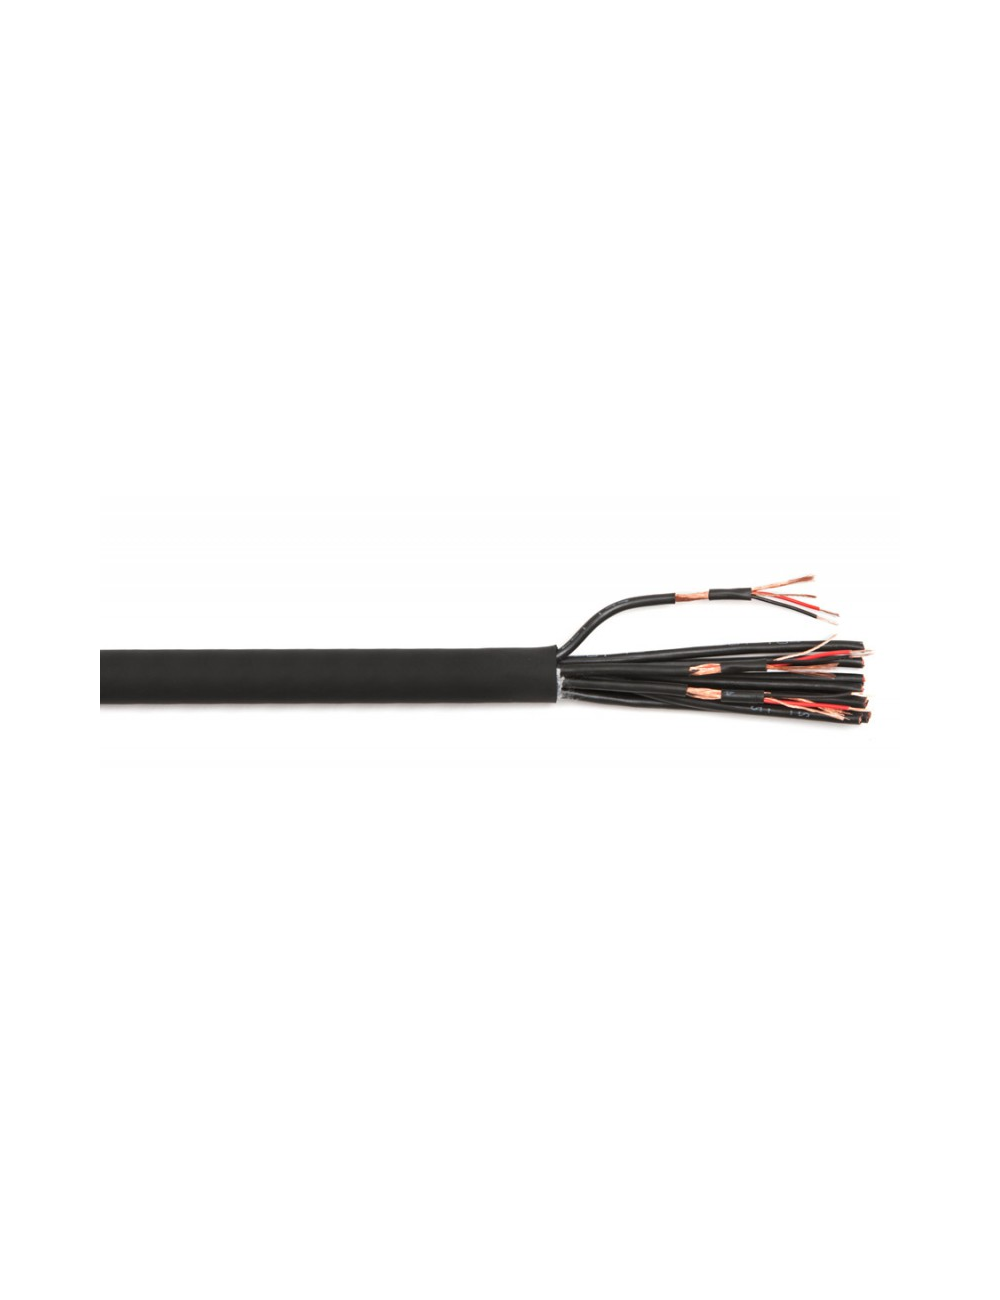 Câble multipaires analogique 12 paires (au metre)